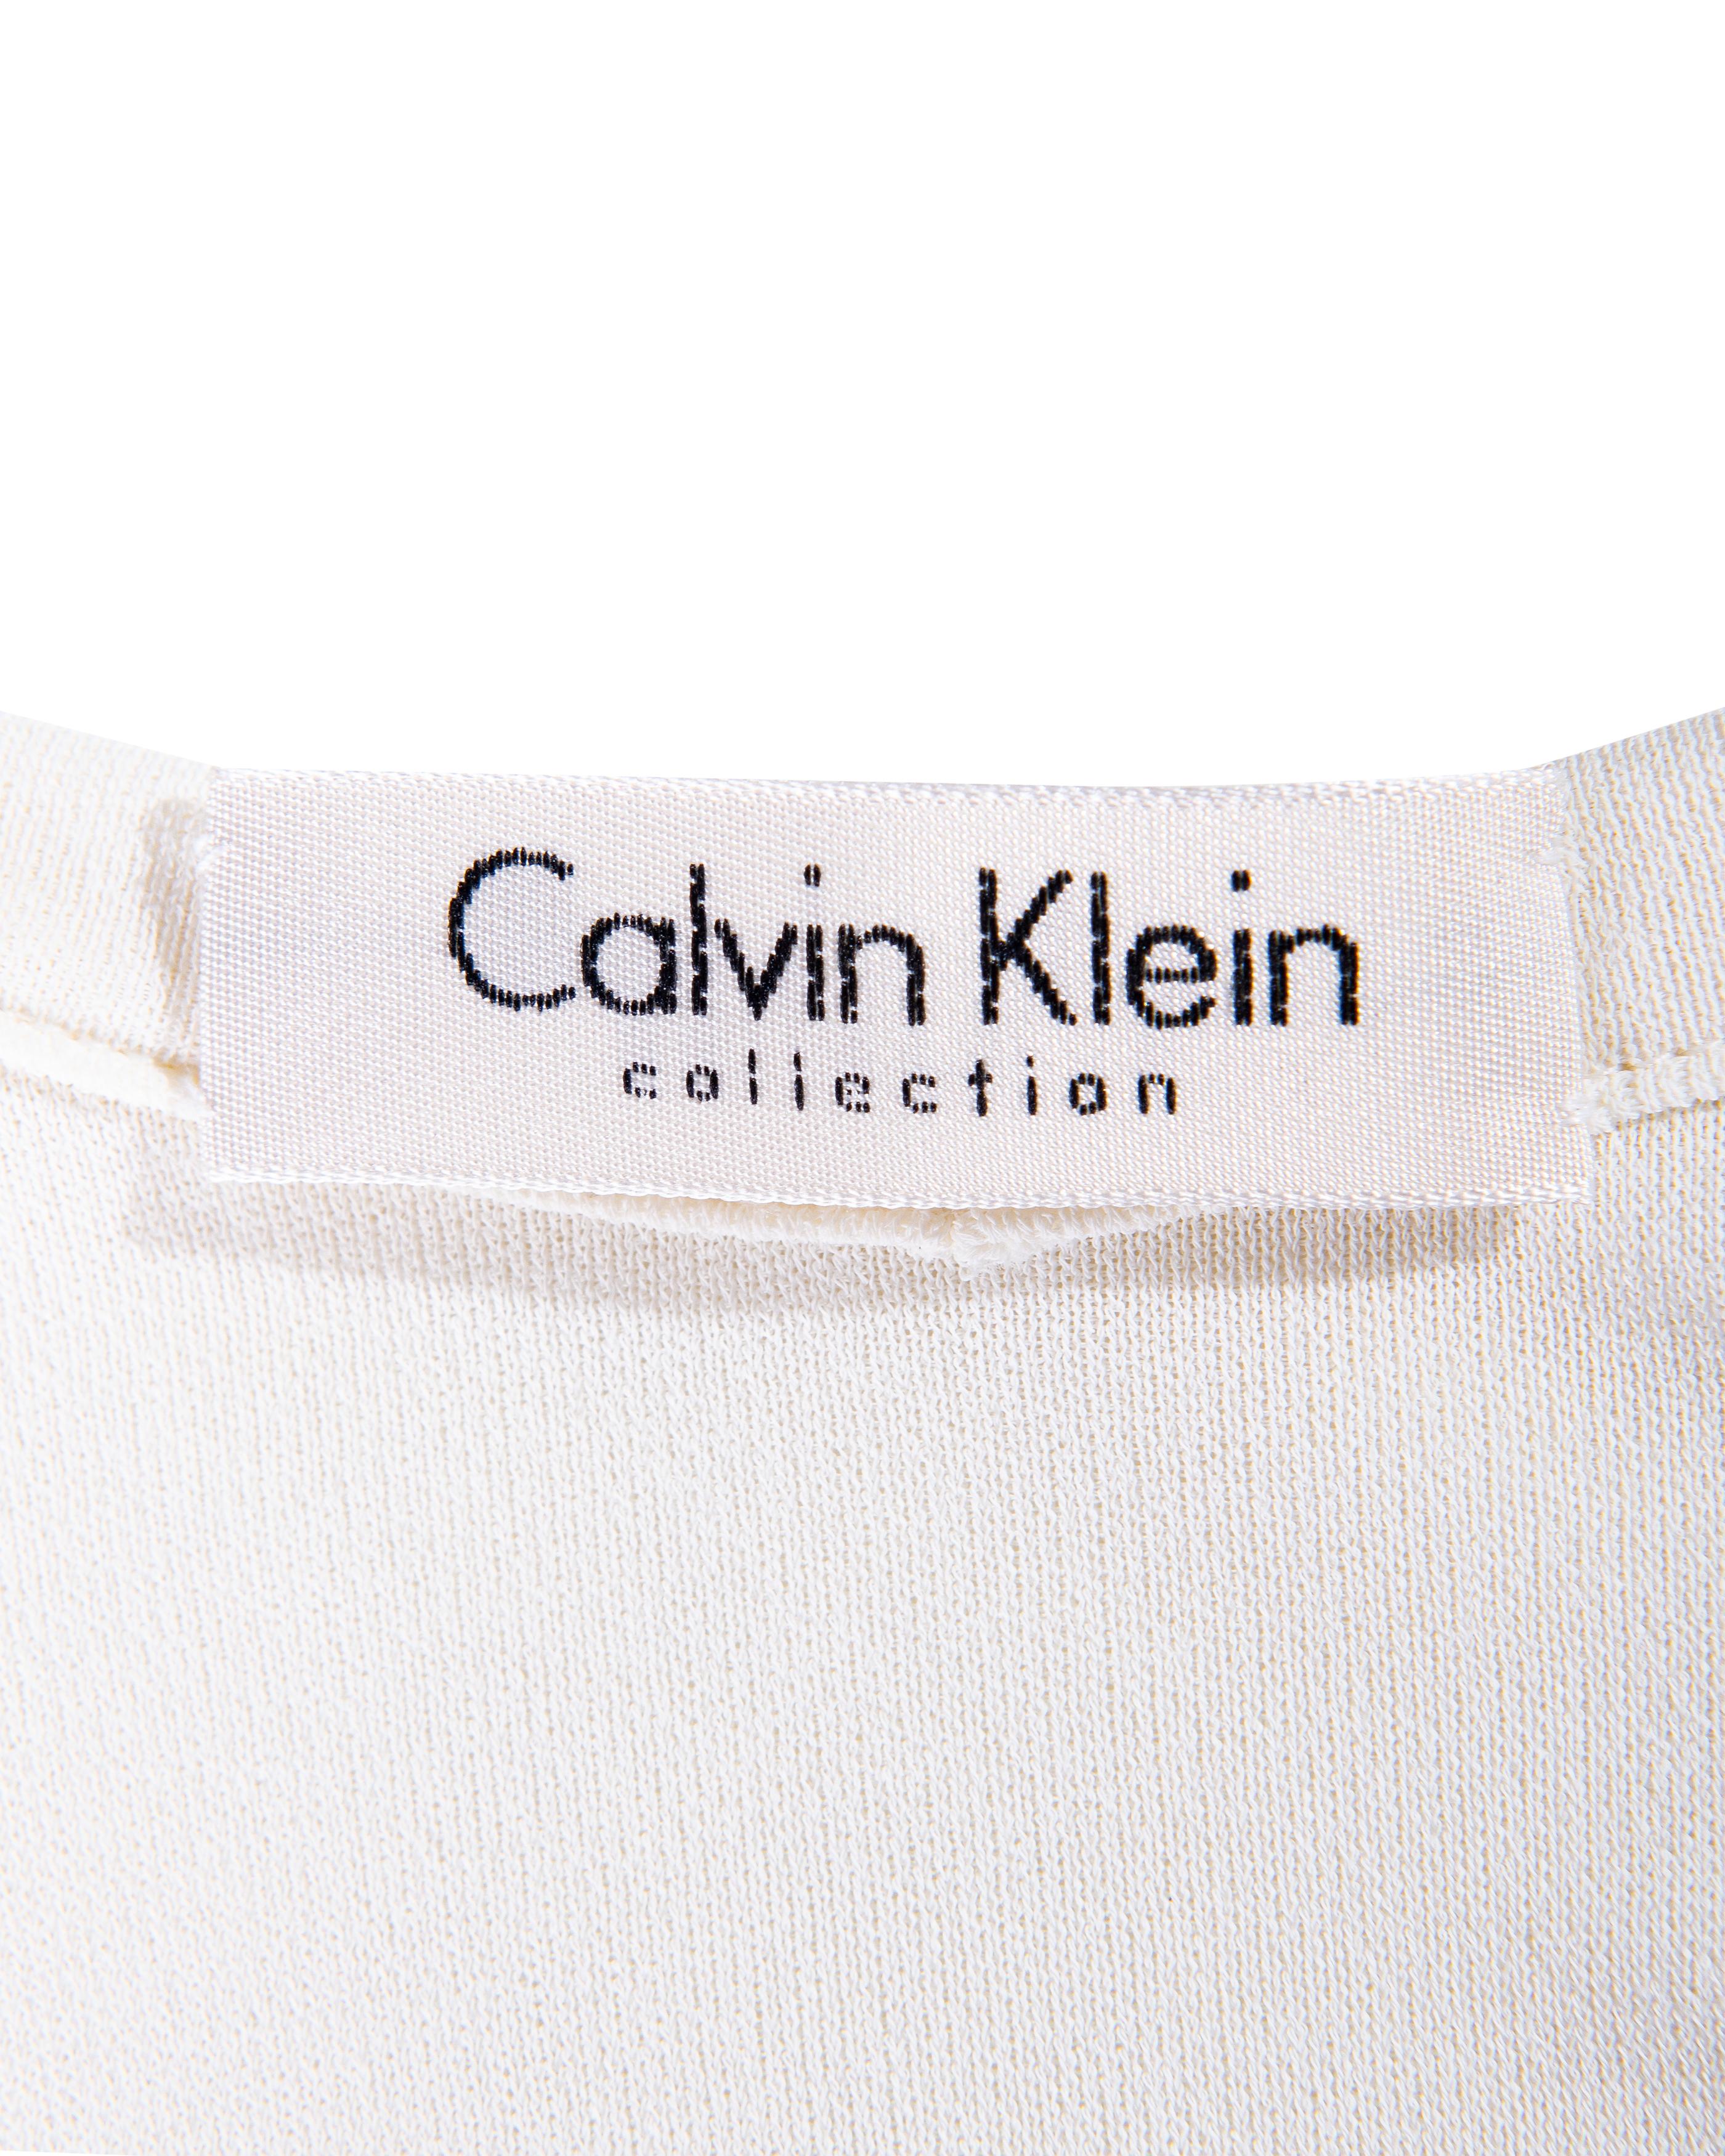 S/S 1994 Calvin Klein White Scoop Neck Maxi Dress 2